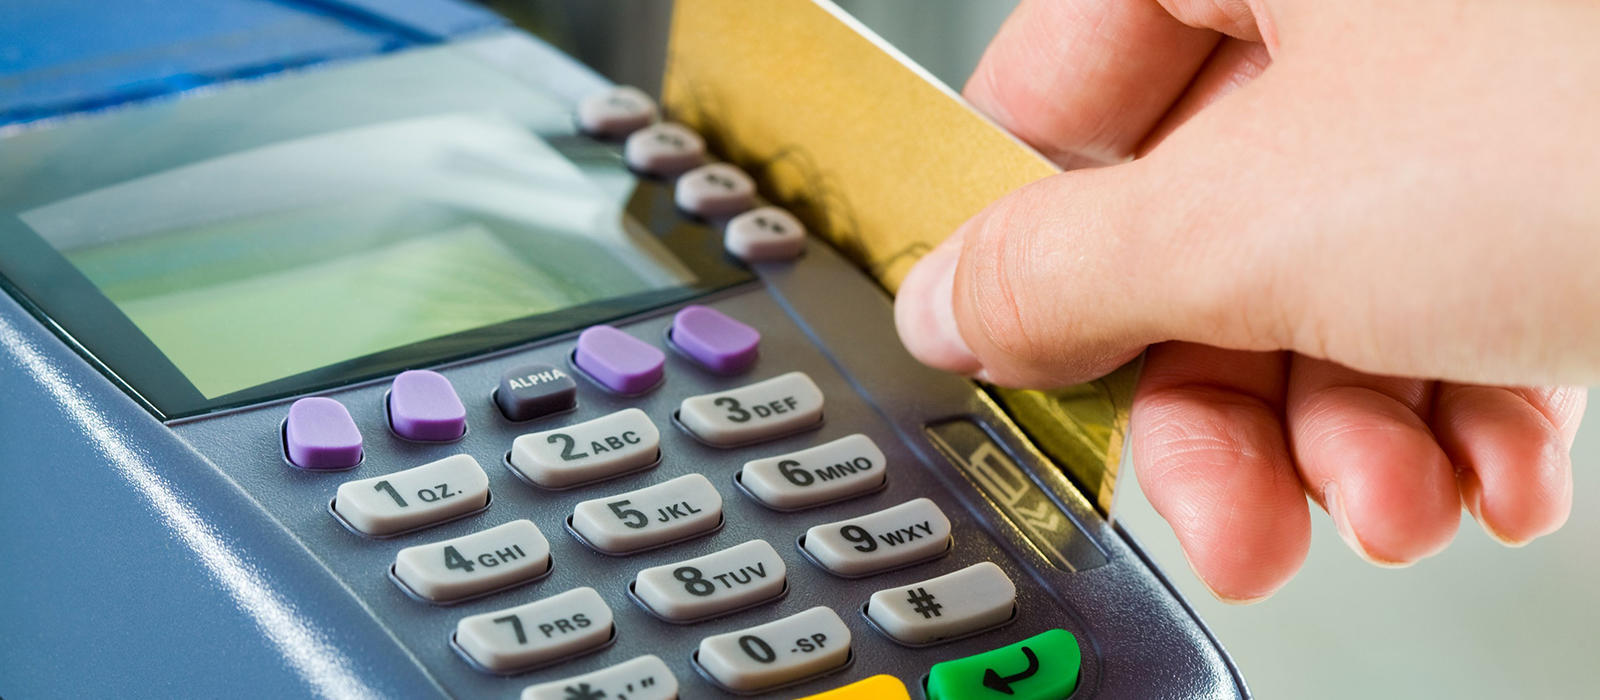 Ηλεκτρονικές πληρωμές: Τι θα ισχύσει από τις 14 Σεπτεμβρίου